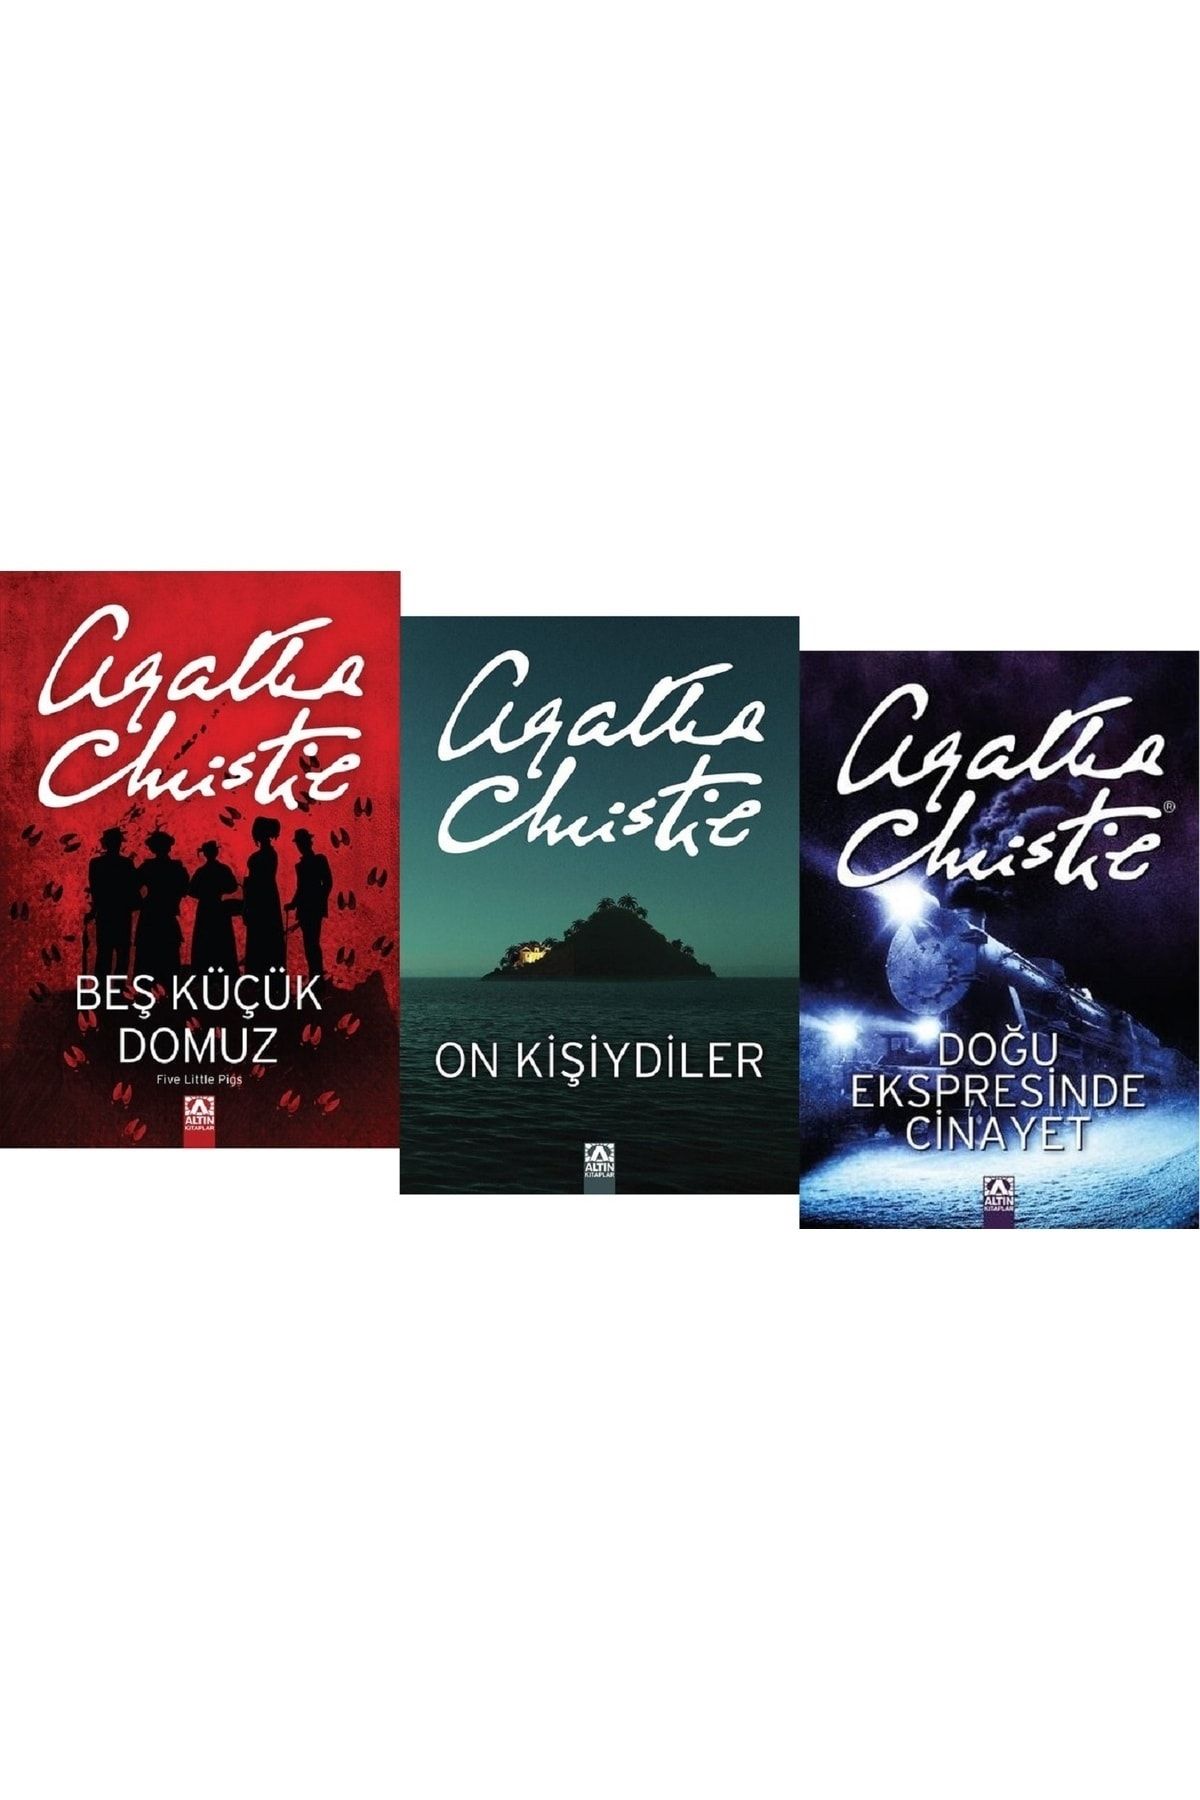 Altın Kitaplar Beş Küçük Domuz + On Kişiydiler + Doğu Ekspresinde Cinayet /Agatha Christie 3 Kitap Set